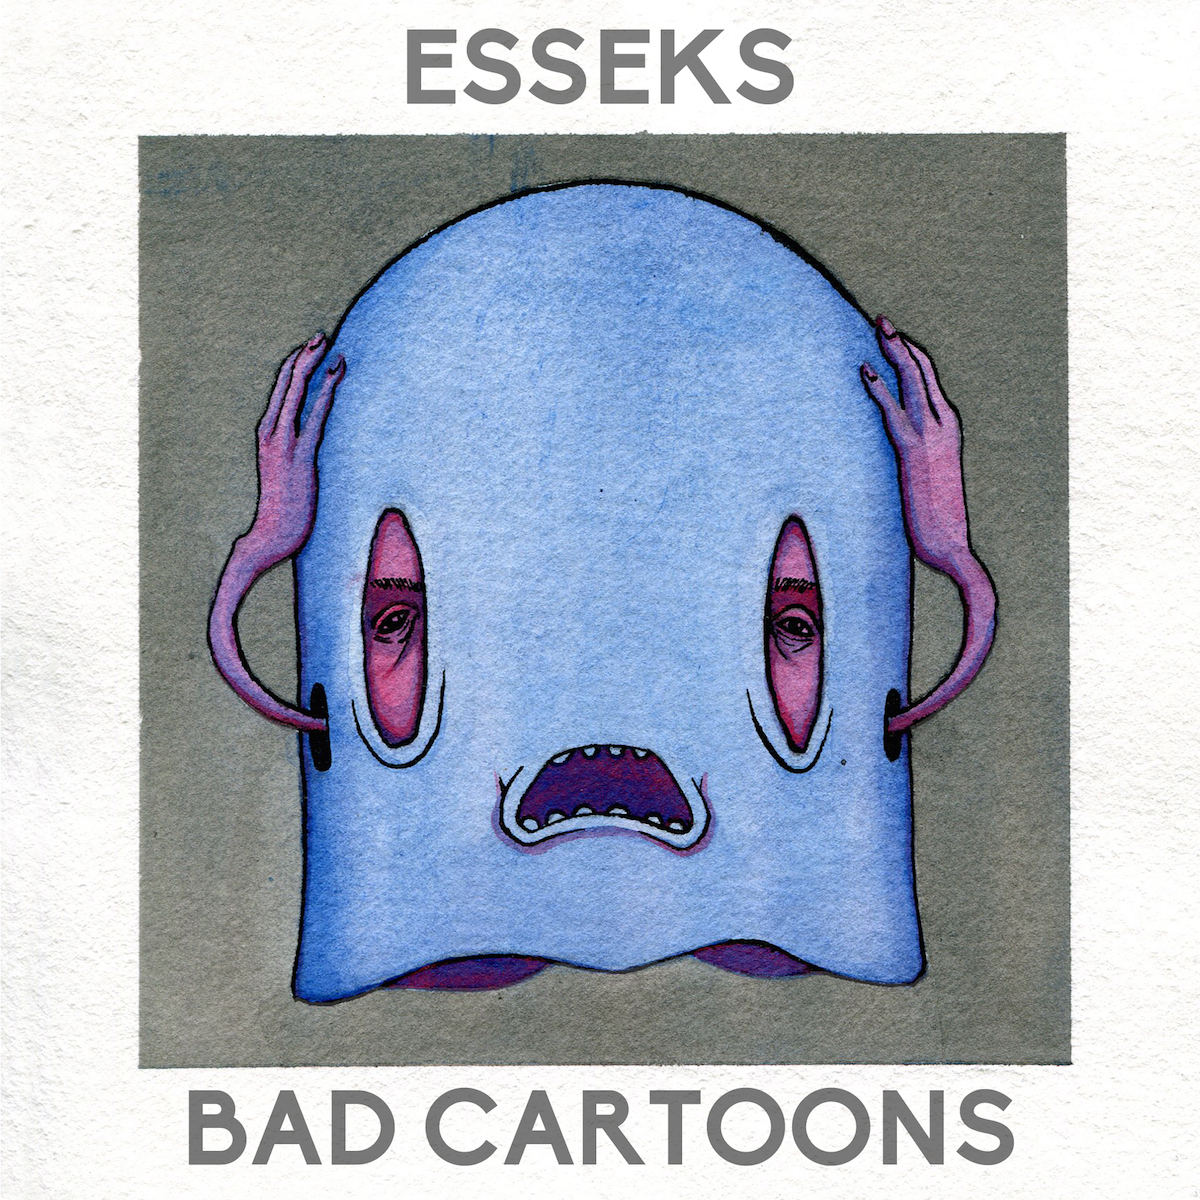 Bad Cartoons- Esseks